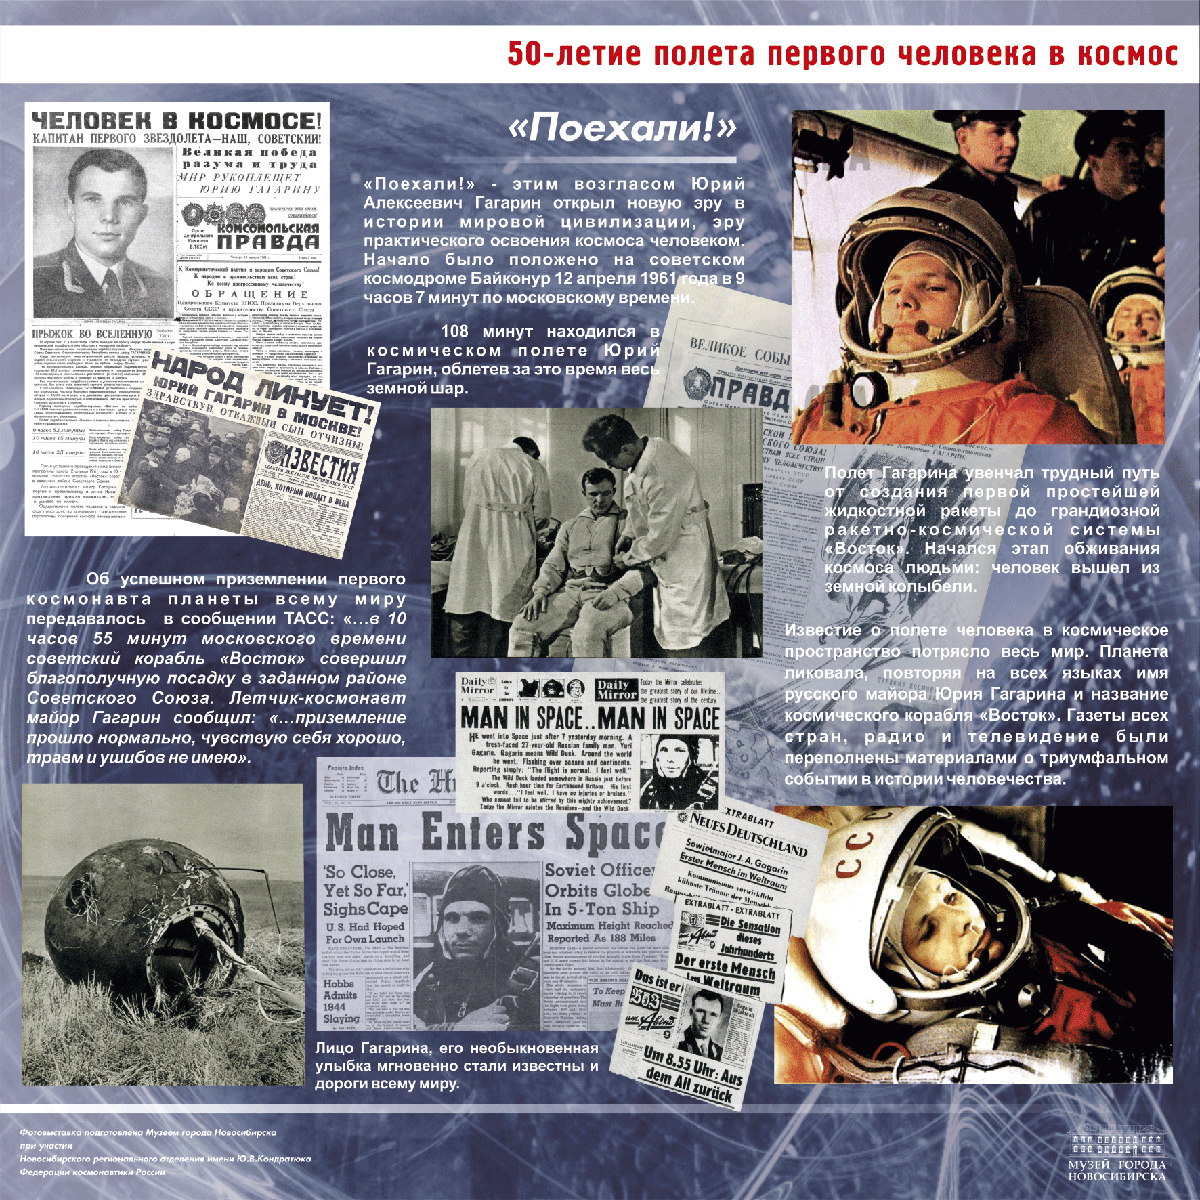 Гагарин в каком возрасте полетел в космос. 1961 Первый полет человека в космос. Полет Гагарина в космос 12 апреля 1961. 60 Летие полета Гагарина в космос.